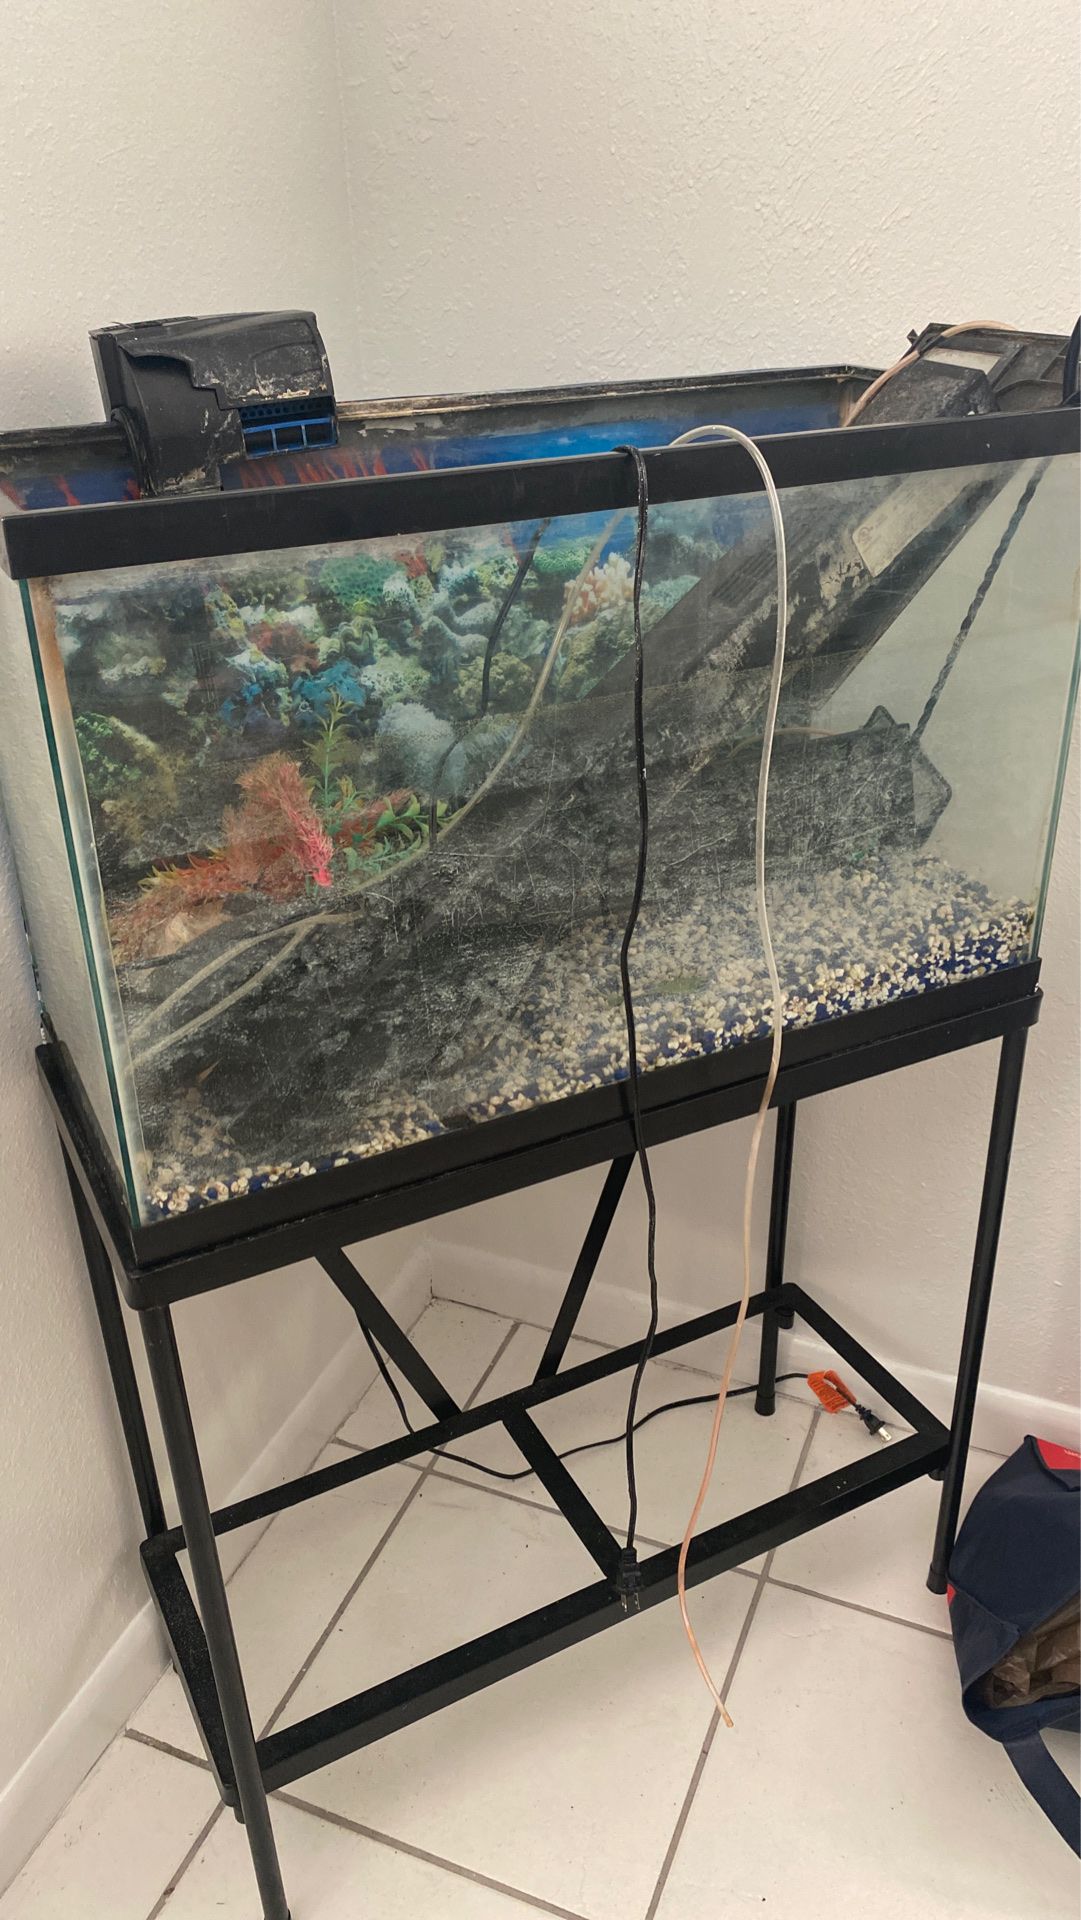 Fish / reptile 30 gallon tank